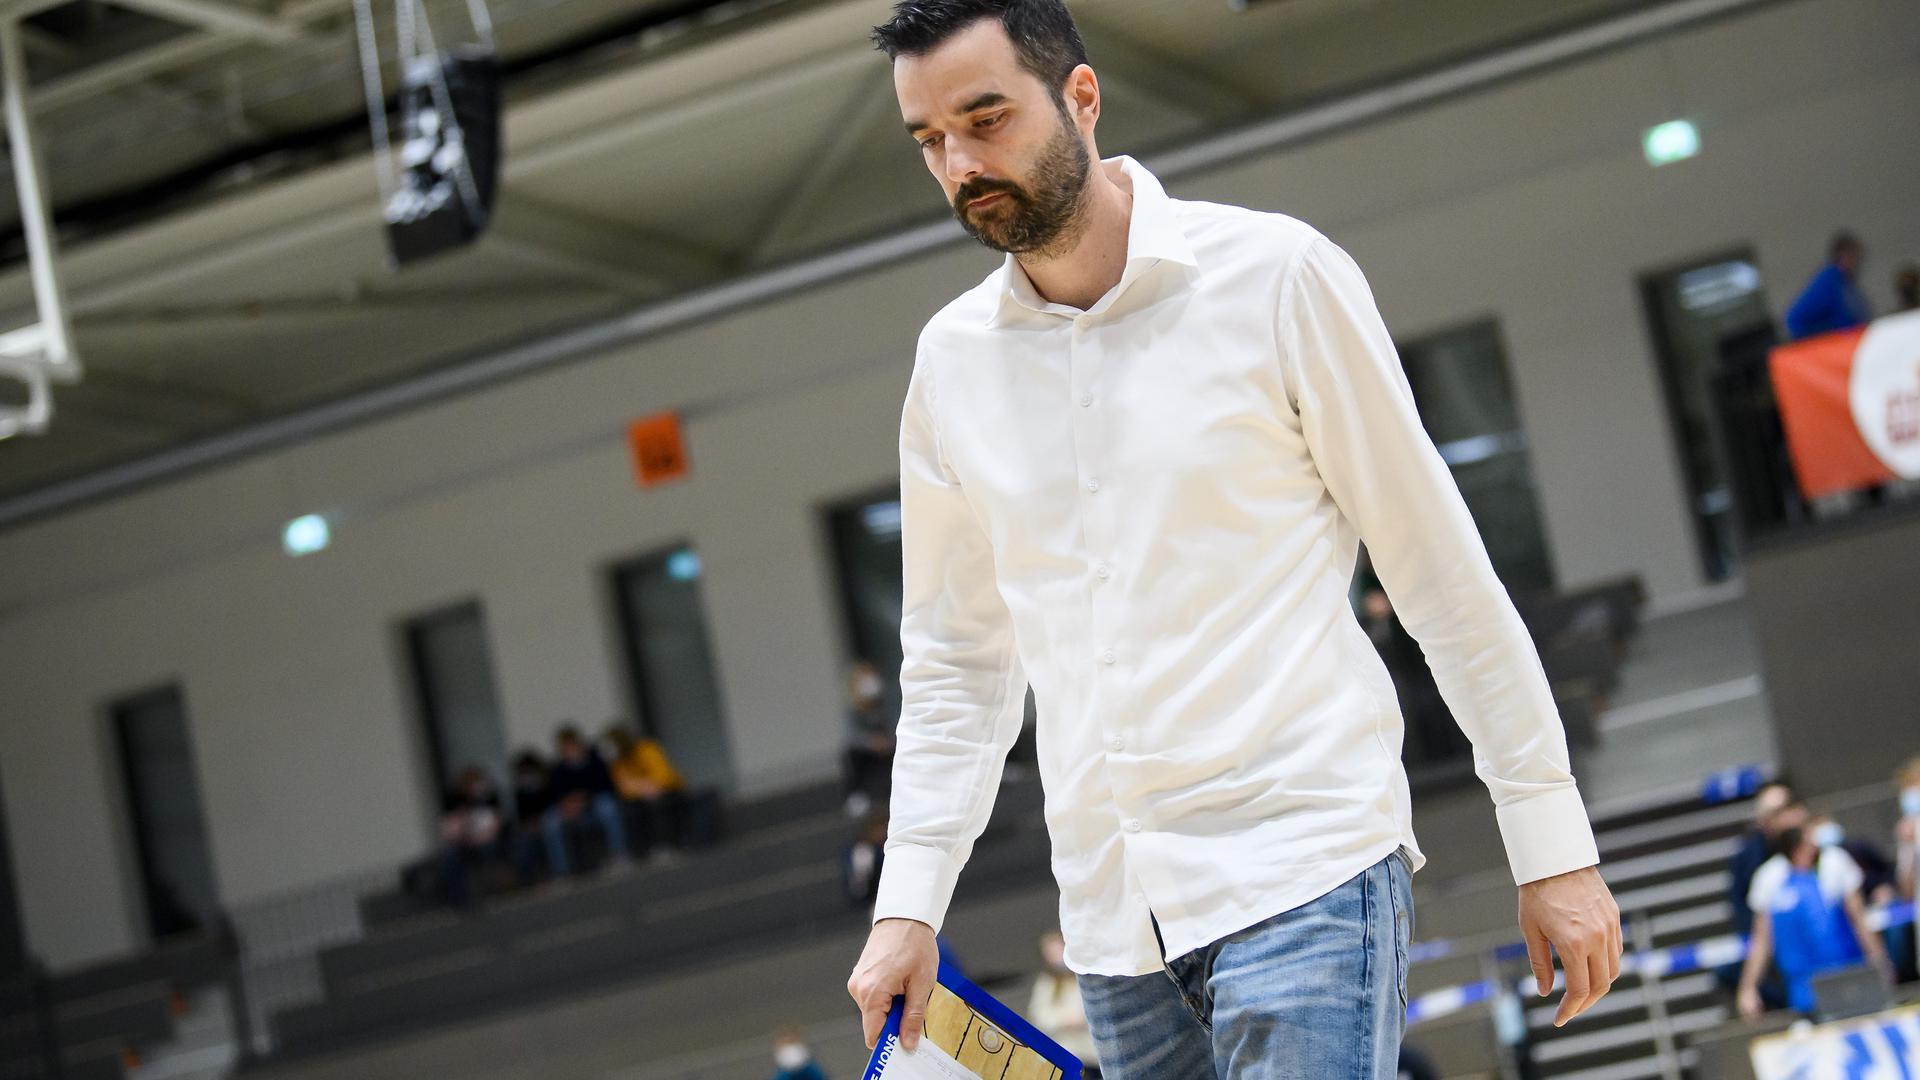 Bedient: Nach der 57:88-Demütigung der PSK Lions gegen die Uni Baskets aus Paderborn entschuldigt sich der Trainer Aleksandar Scepanovic für den Auftritt.

